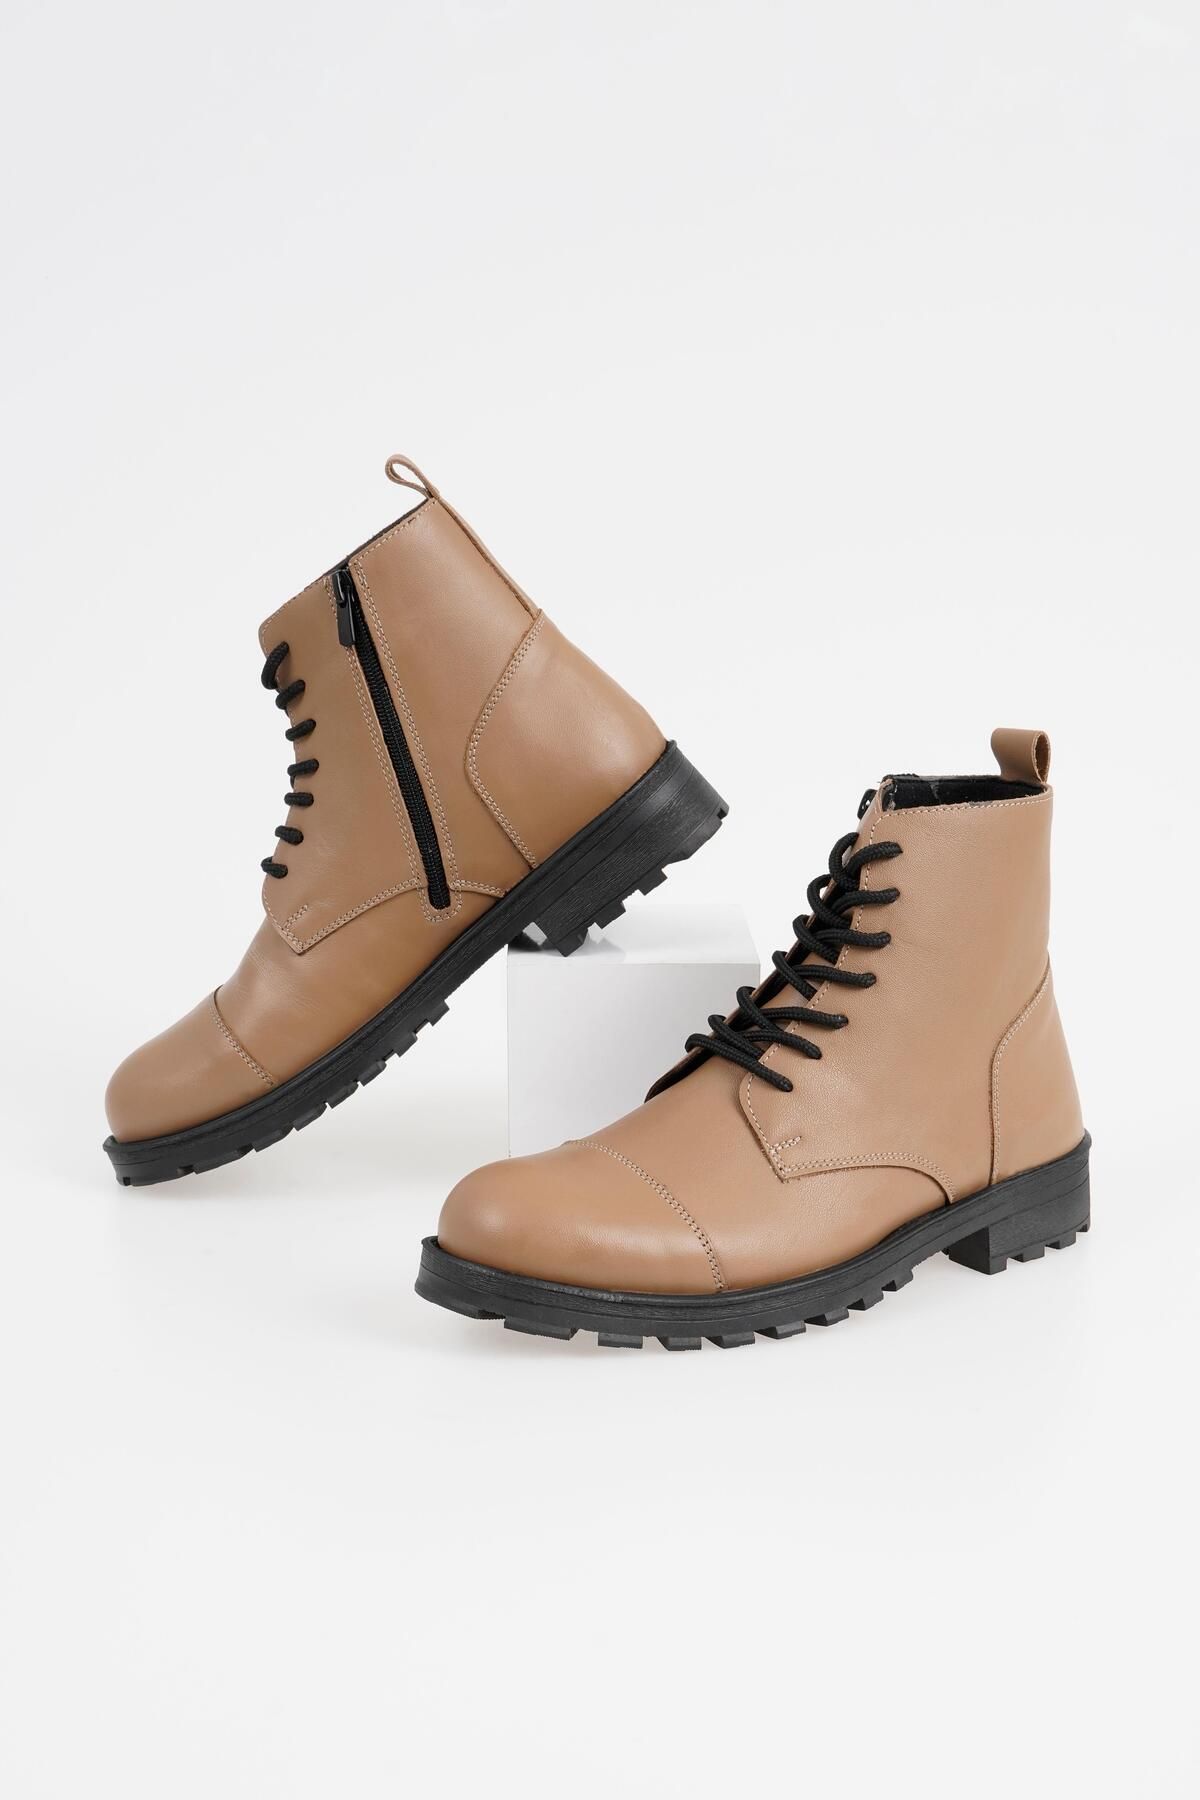 CZ London Hakiki Deri Erkek Bağcıklı Klasik Kısa Topuklu Kışlık Ayakkabı